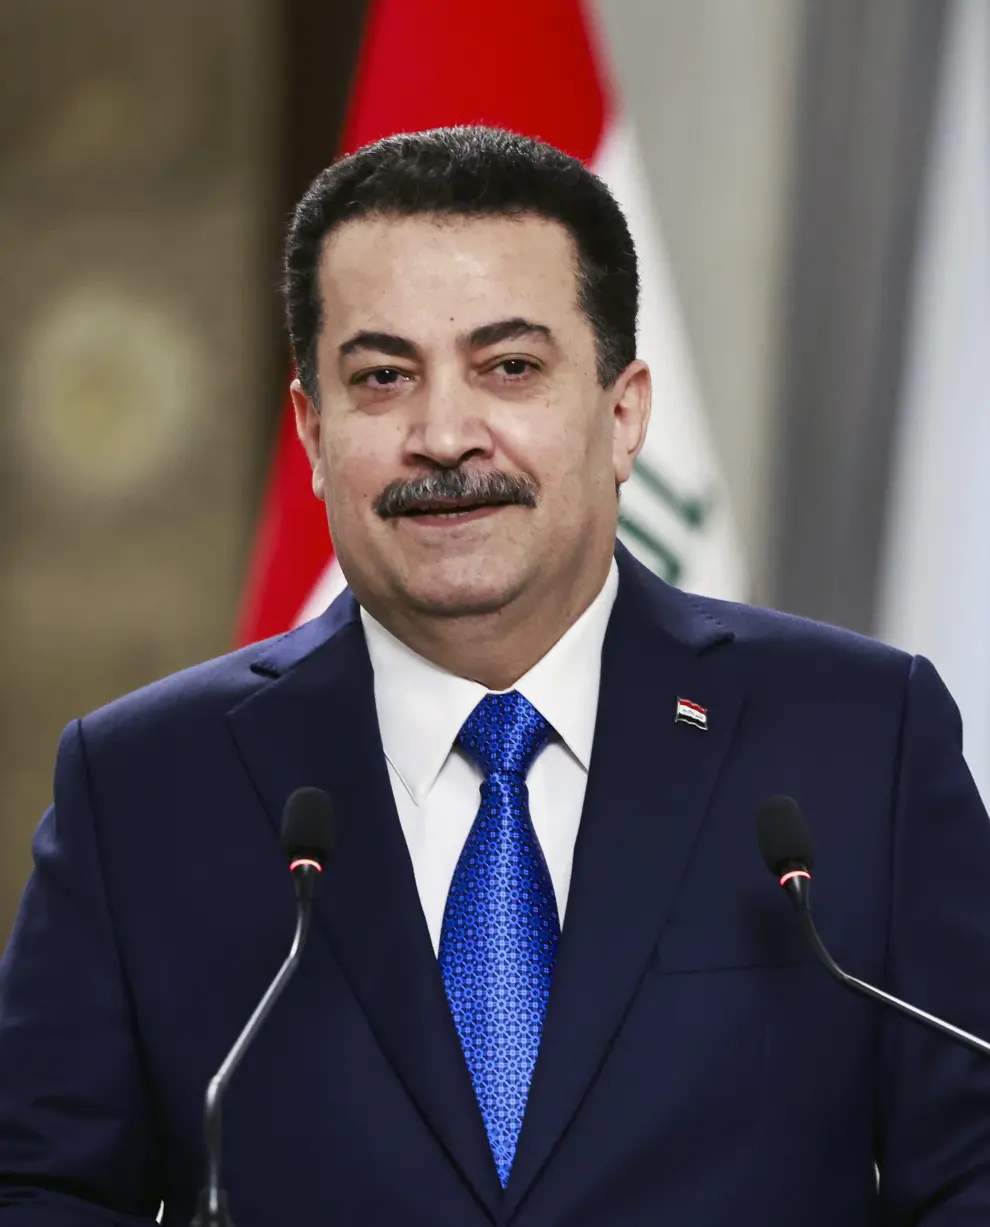 Visita de Pedro Sánchez al primer ministro de Irak en Bagdad